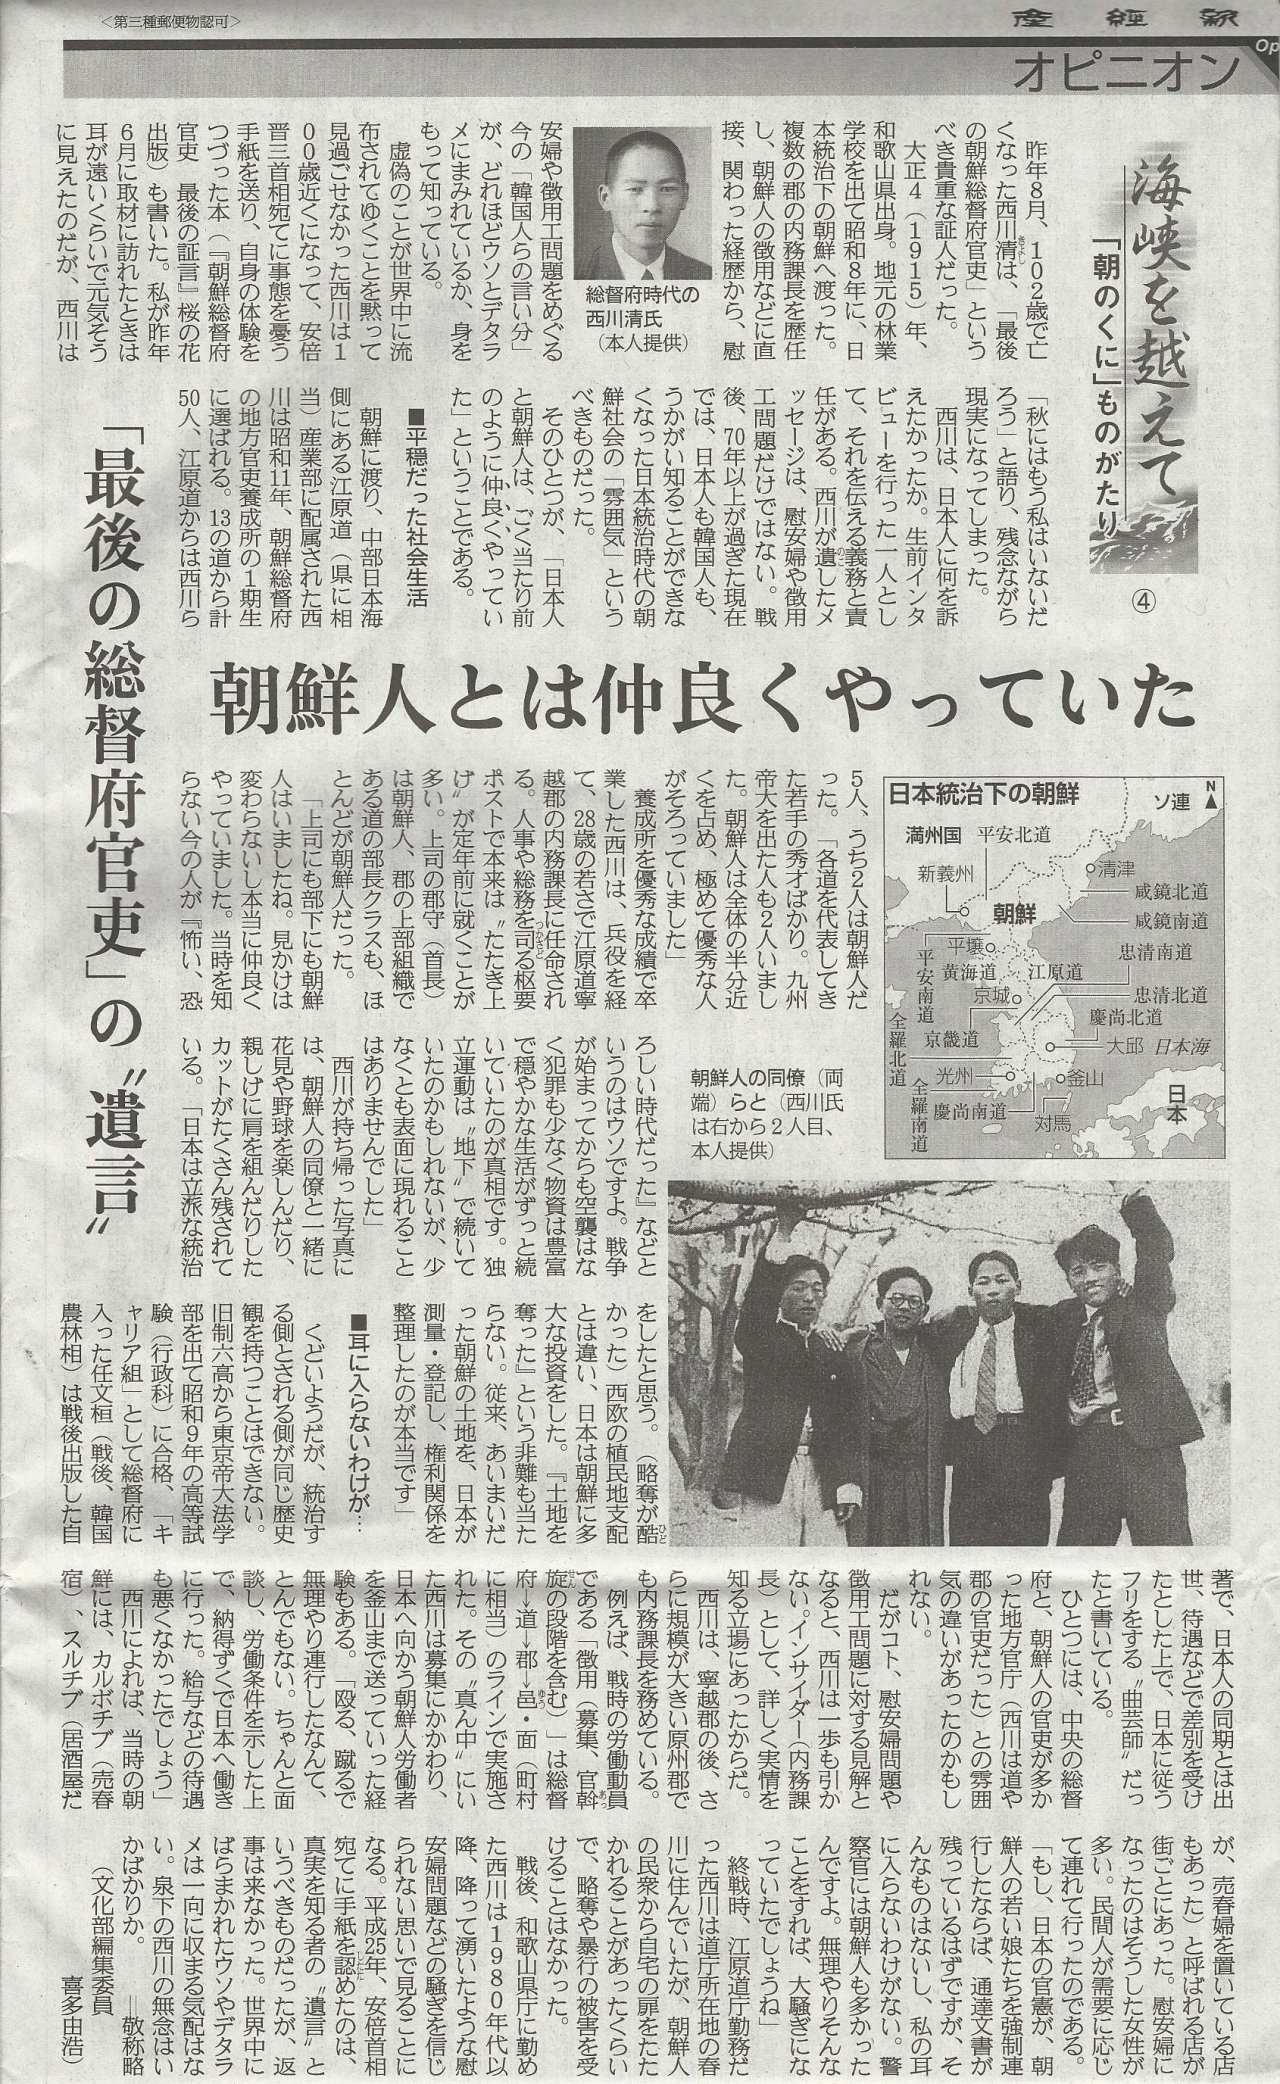 2018年２月６日の産経新聞６面に、『朝鮮總督府官吏 最後の証言』著者の西川清氏へのインタビューに基づいた記事が大きく掲載されました。